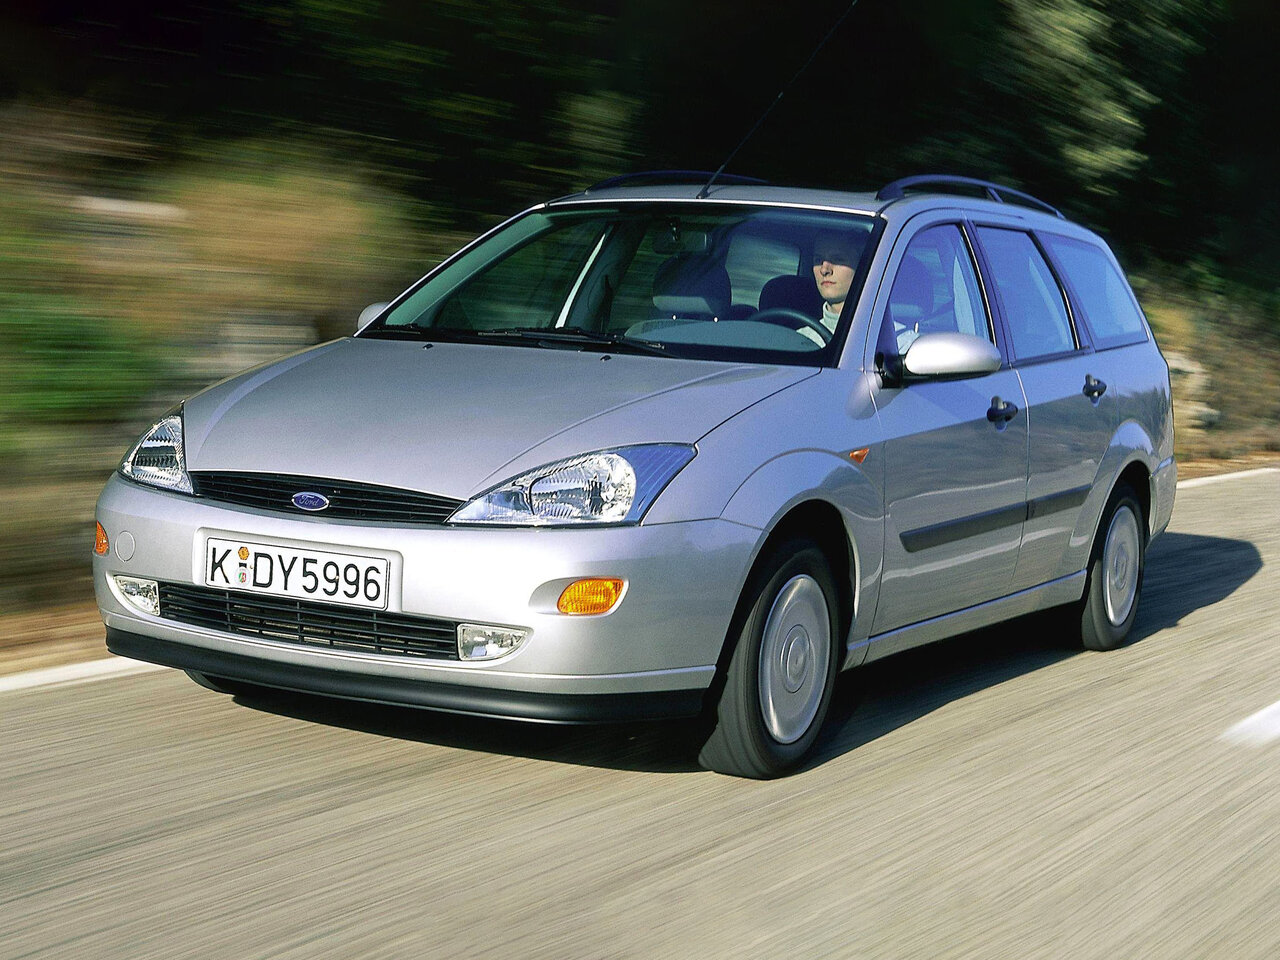 Фокус 1 1.8 универсал. Форд фокус универсал 2001. Форд фокус универсал 1999. Форд фокус 1998 – 2001. Форд фокус универсал 2001 года.